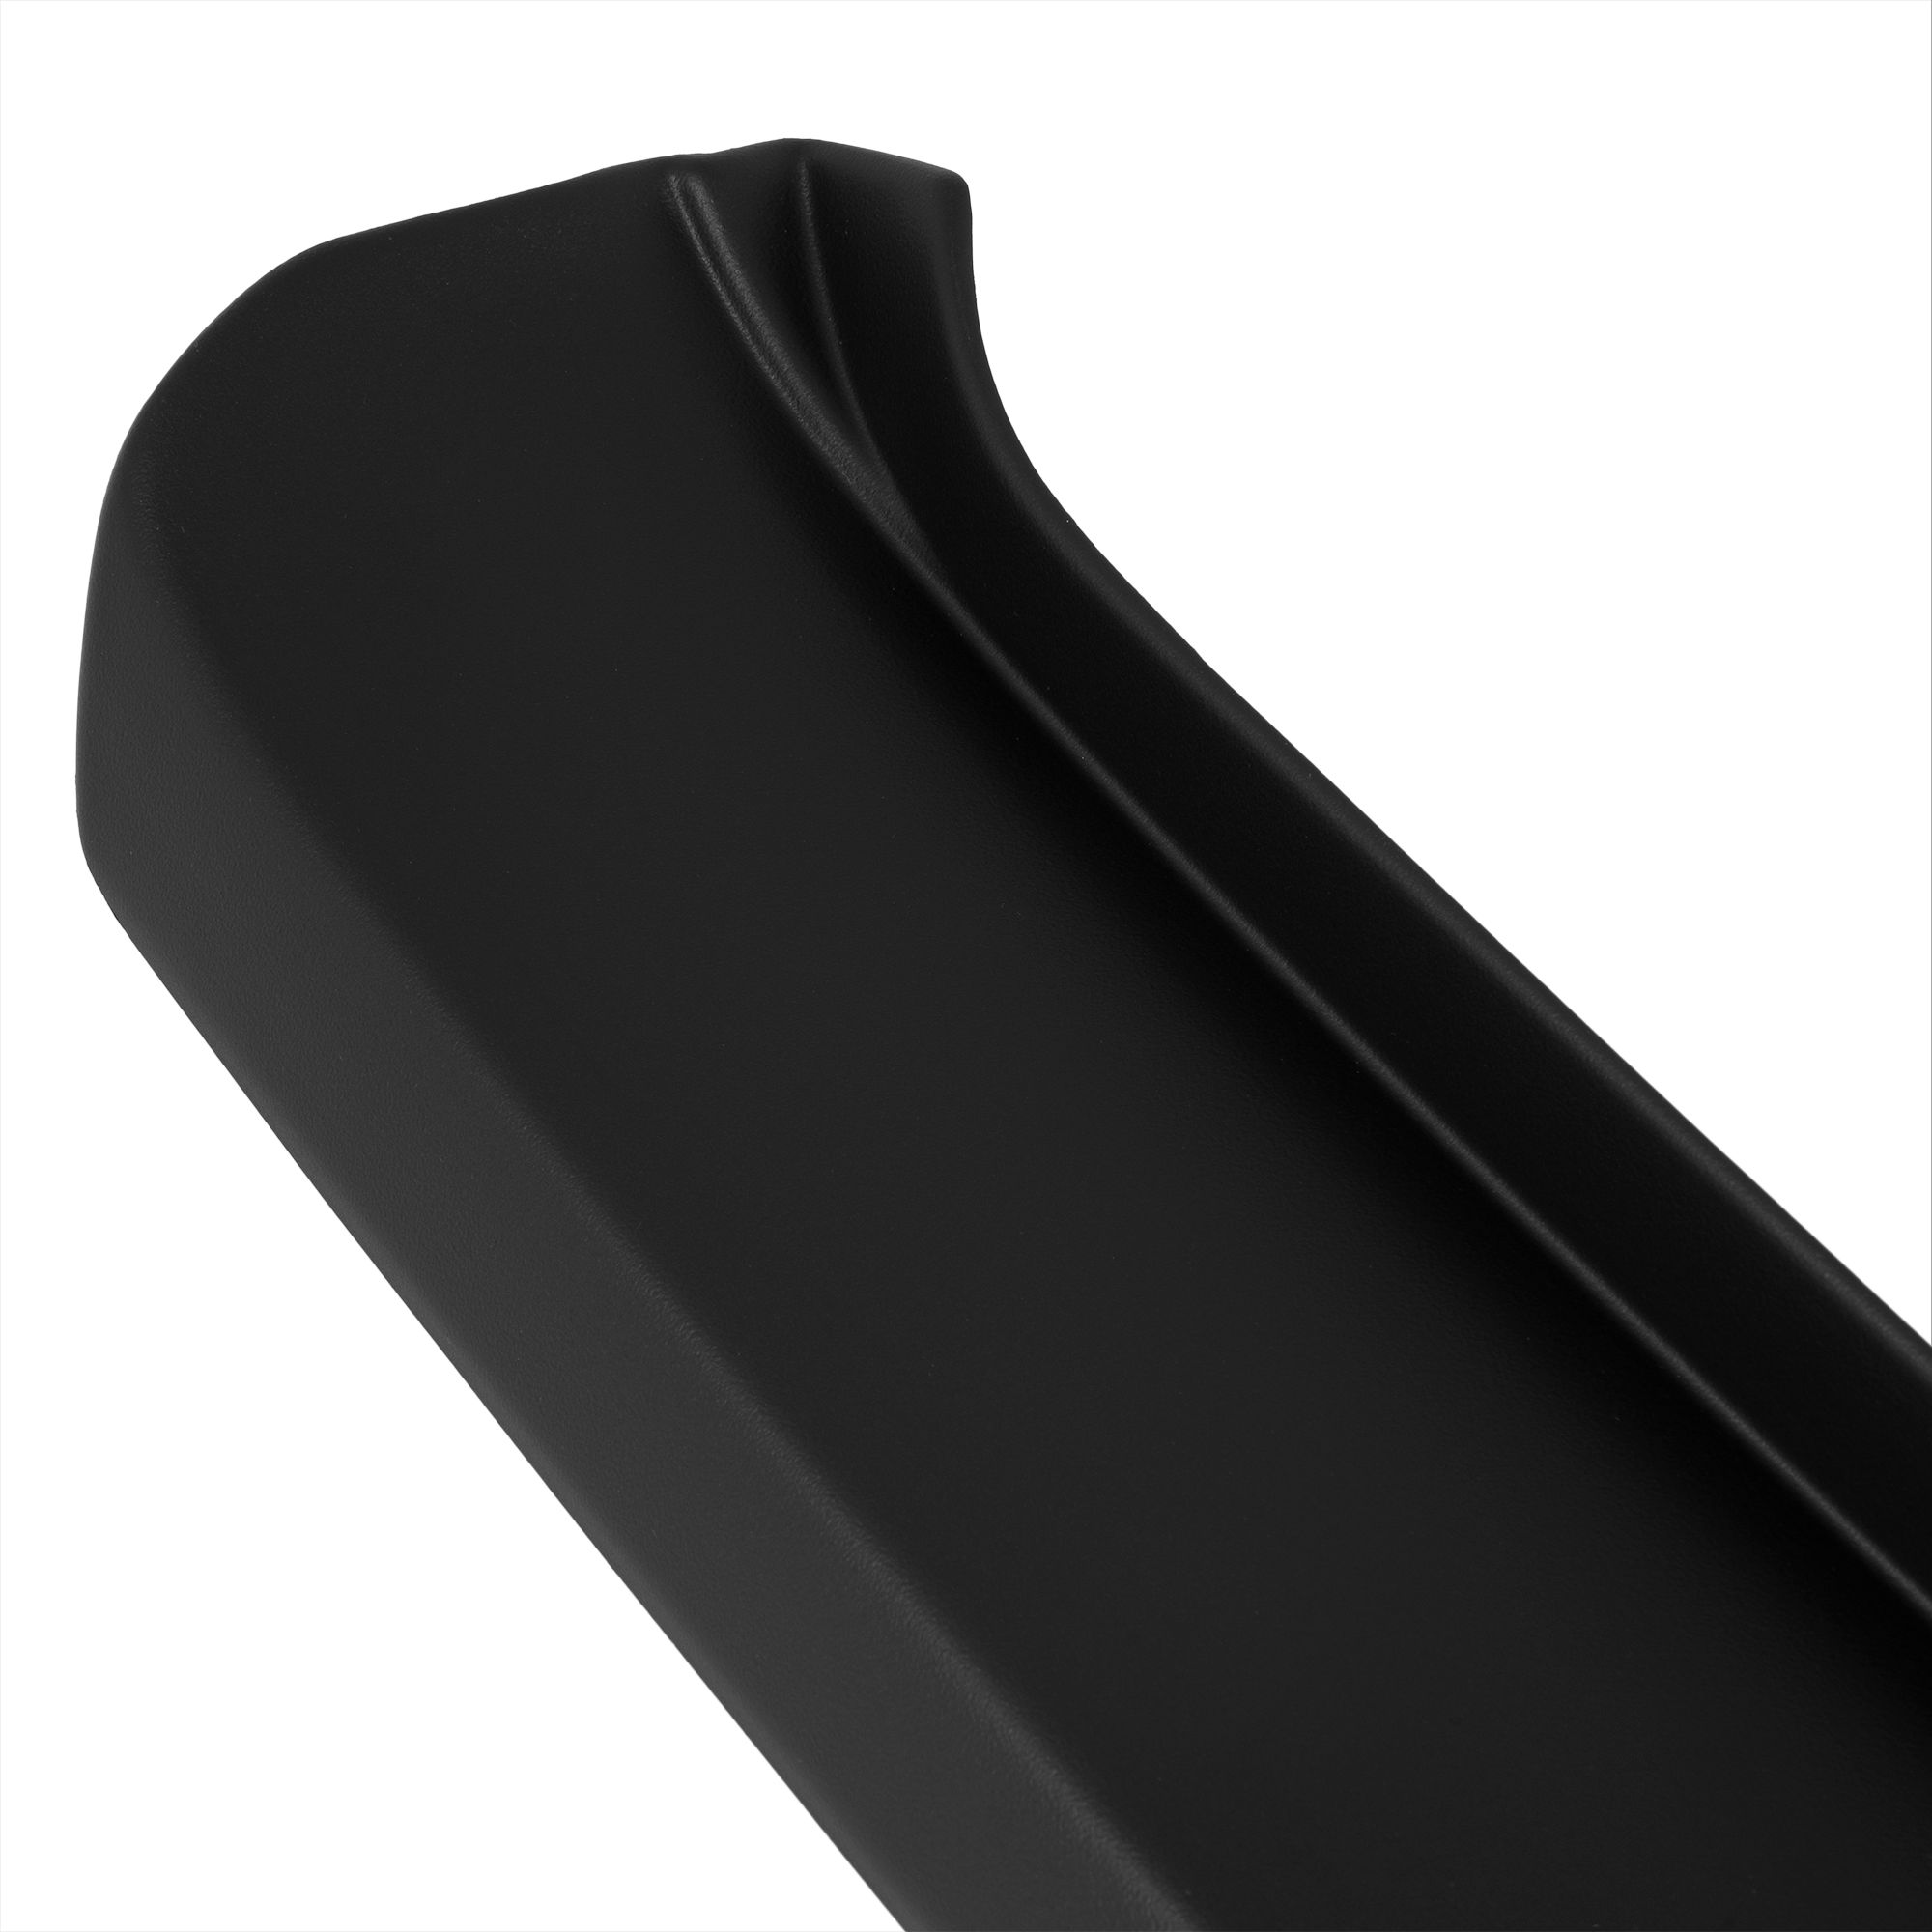 Ladekantenschutz mit Abkantung passend für MERCEDES A KLASSE W169  (Facelift) ab BJ. 05.2008 bis 08.2012 ABS Farbe schwarz | Aroba